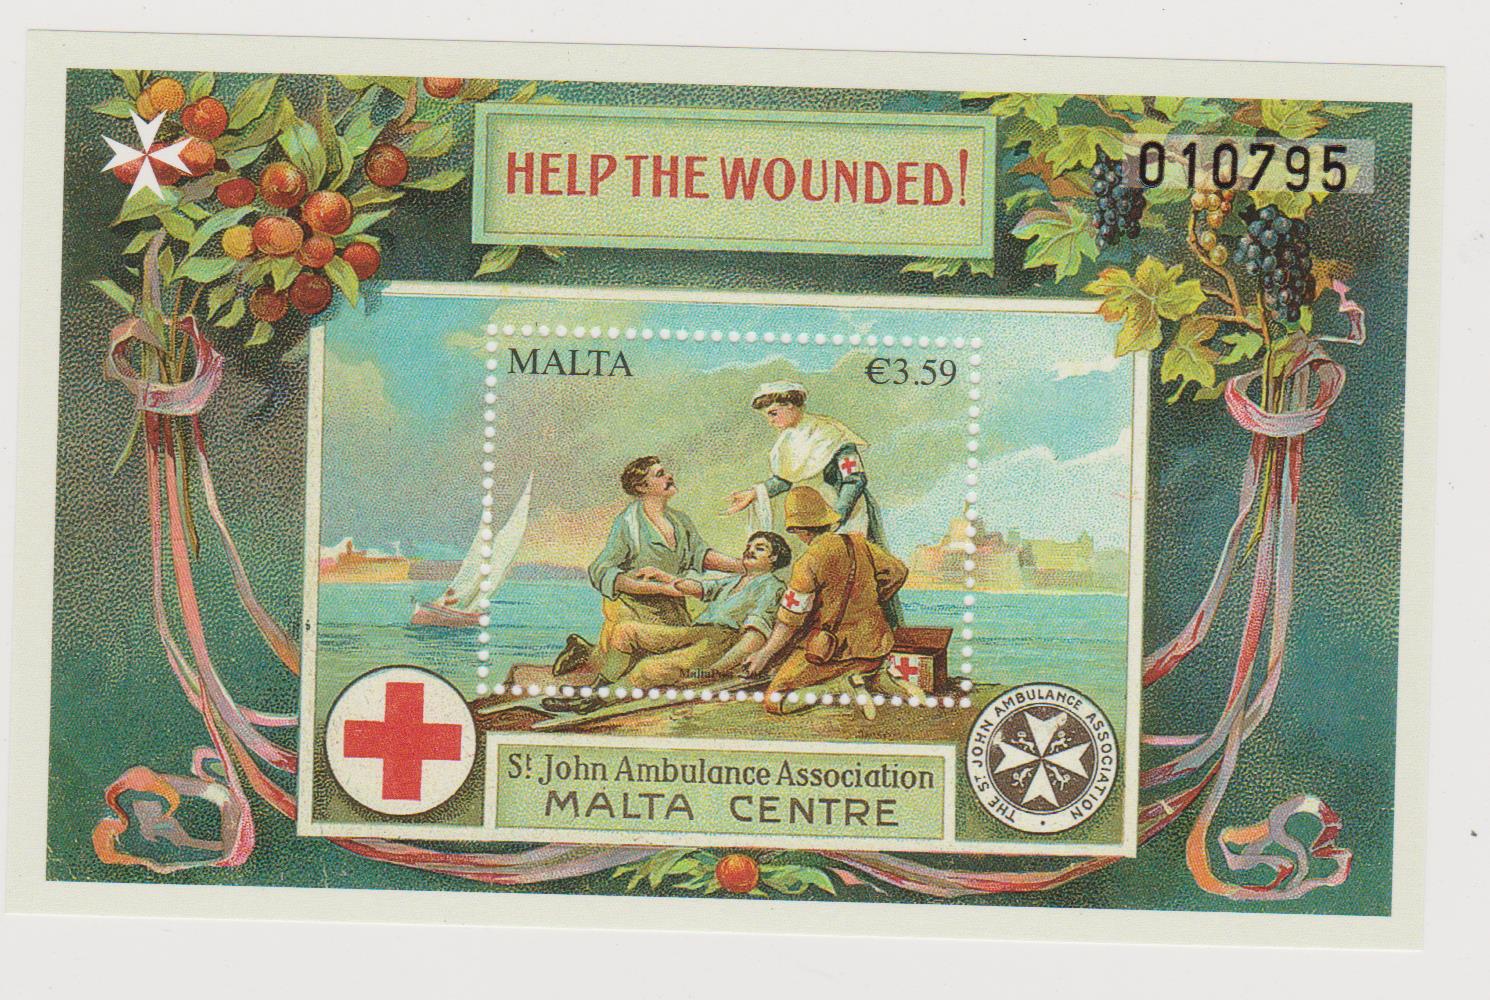 Malta croce rossa 001